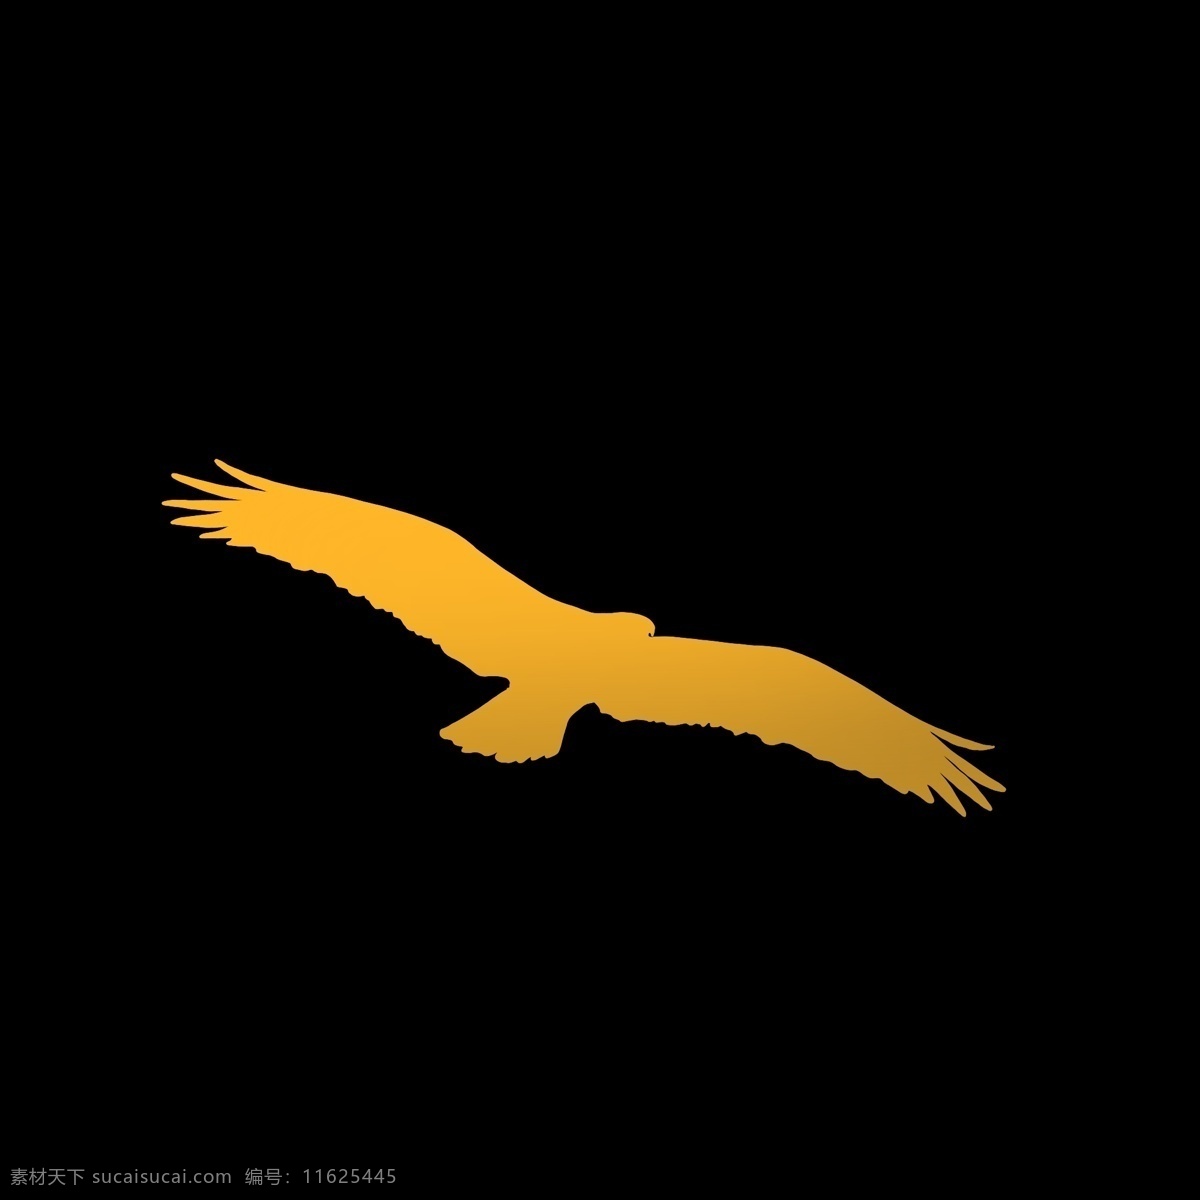 黄色 渐变 飞行 中 老鹰 暖色 飞行中 色块 翱翔 动物 飞行动物 卡通 简洁 简单 节约 线条 天空中飞翔 灵敏